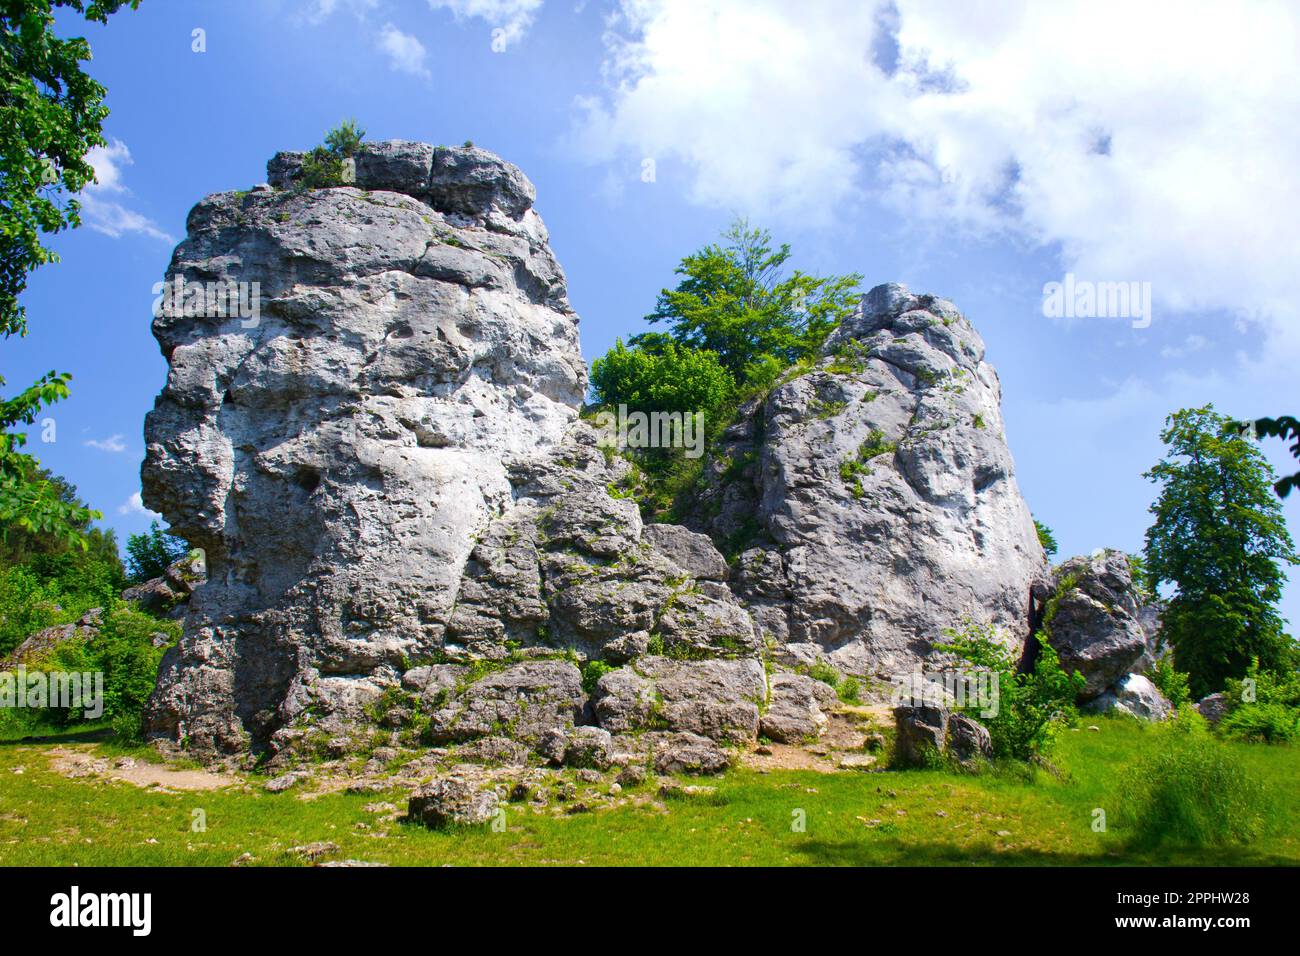 Climbing rocks at Gora Zborow, Podlesice, Poland Stock Photo